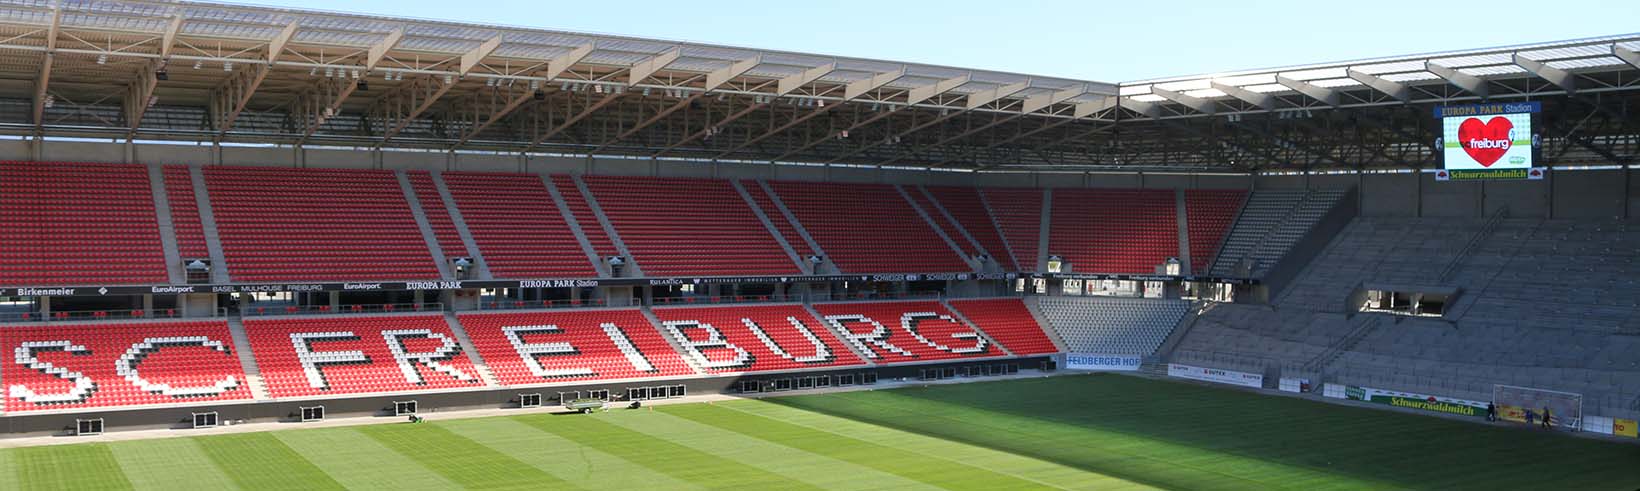 Bilderstory zum neuen Stadion des SC Freiburg -Teil 3